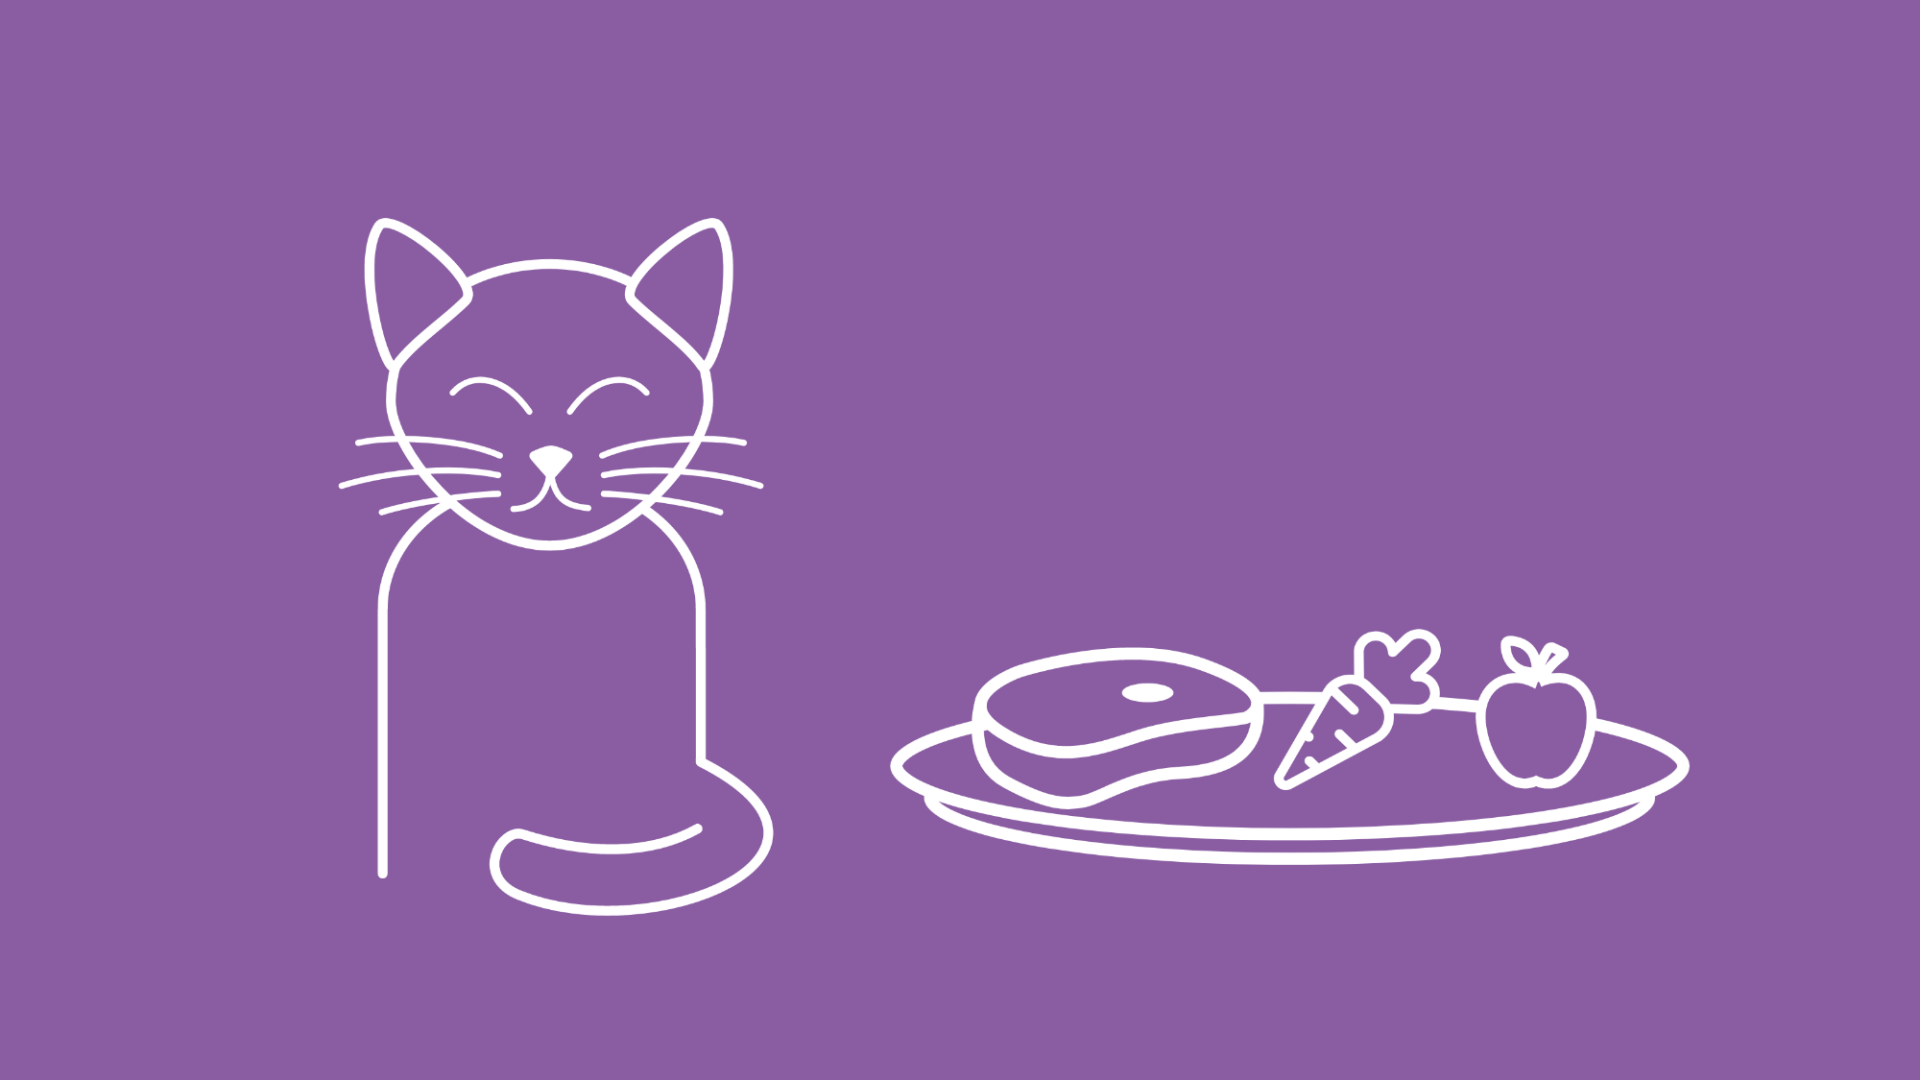 Eine Katze sitzt neben einem Teller mit einem rohen Stück Fleisch, einer Karotte und einem Apfel.  